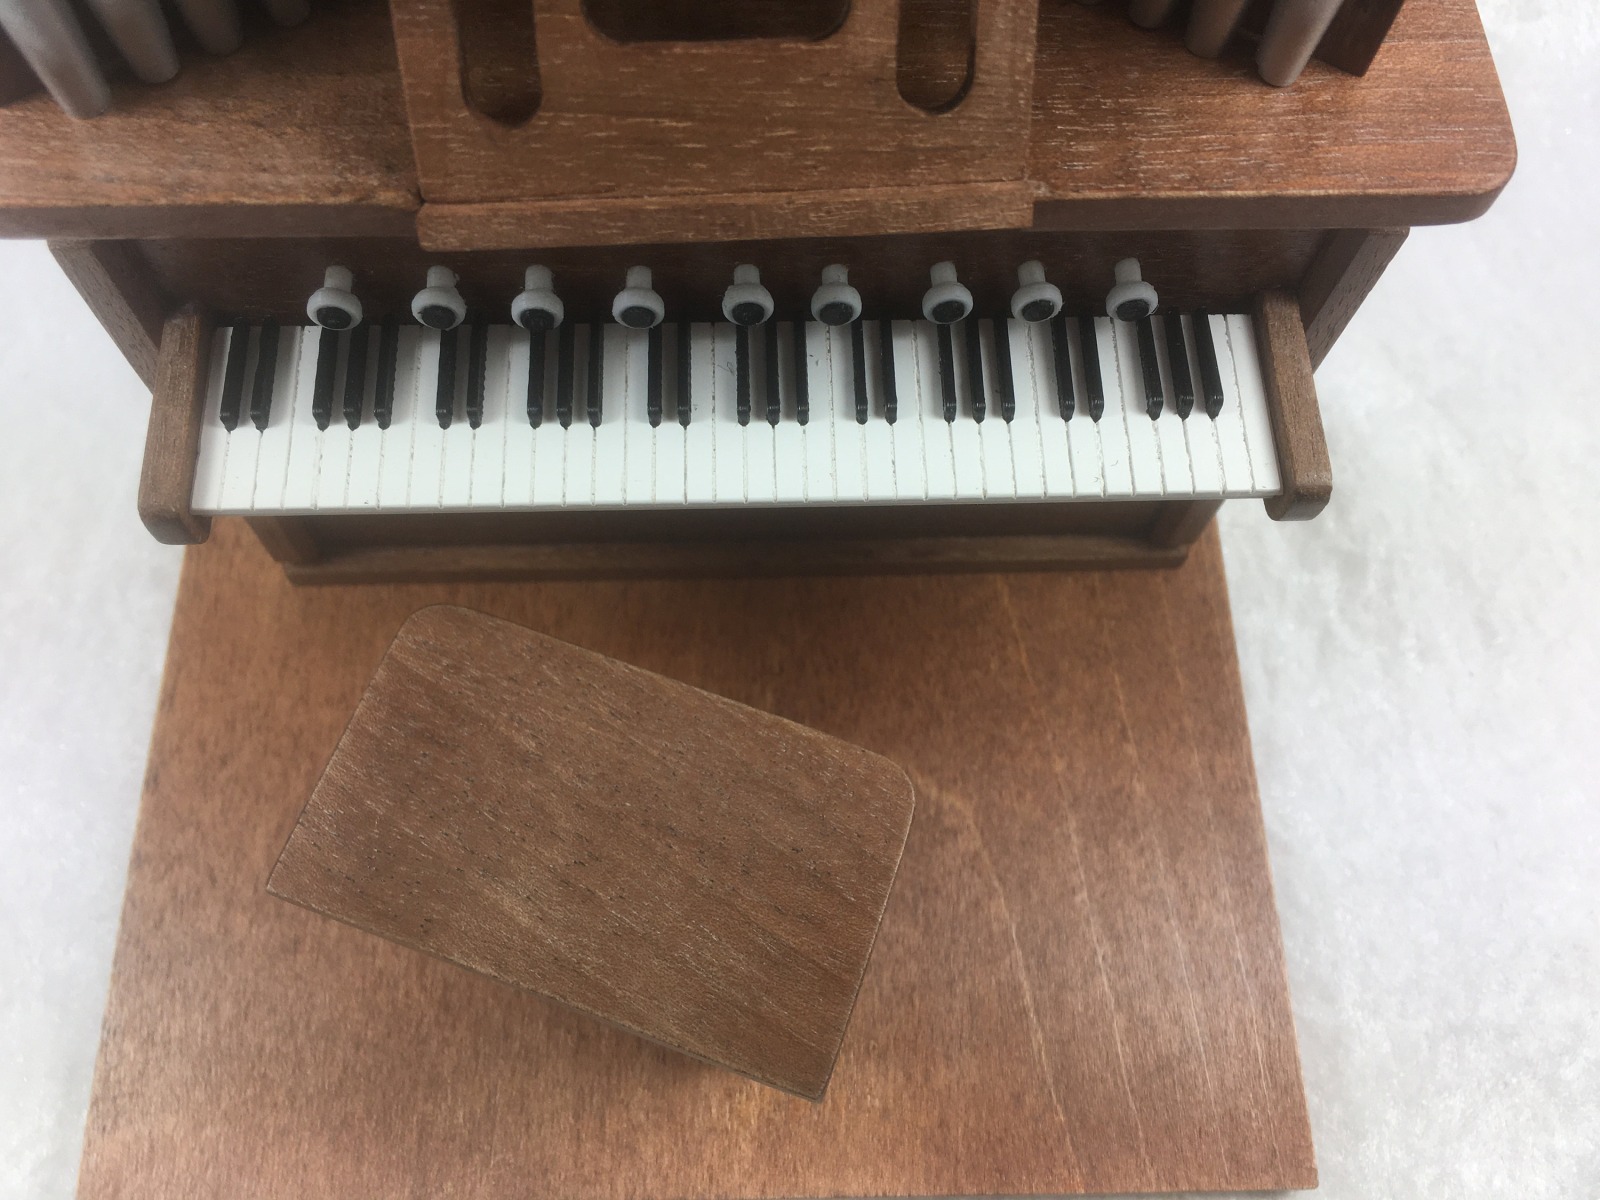 Klaviertastatur, Pianotastatur, Orgeltastatur zum einbauen in ihr eigenes hergestelltes Instrument